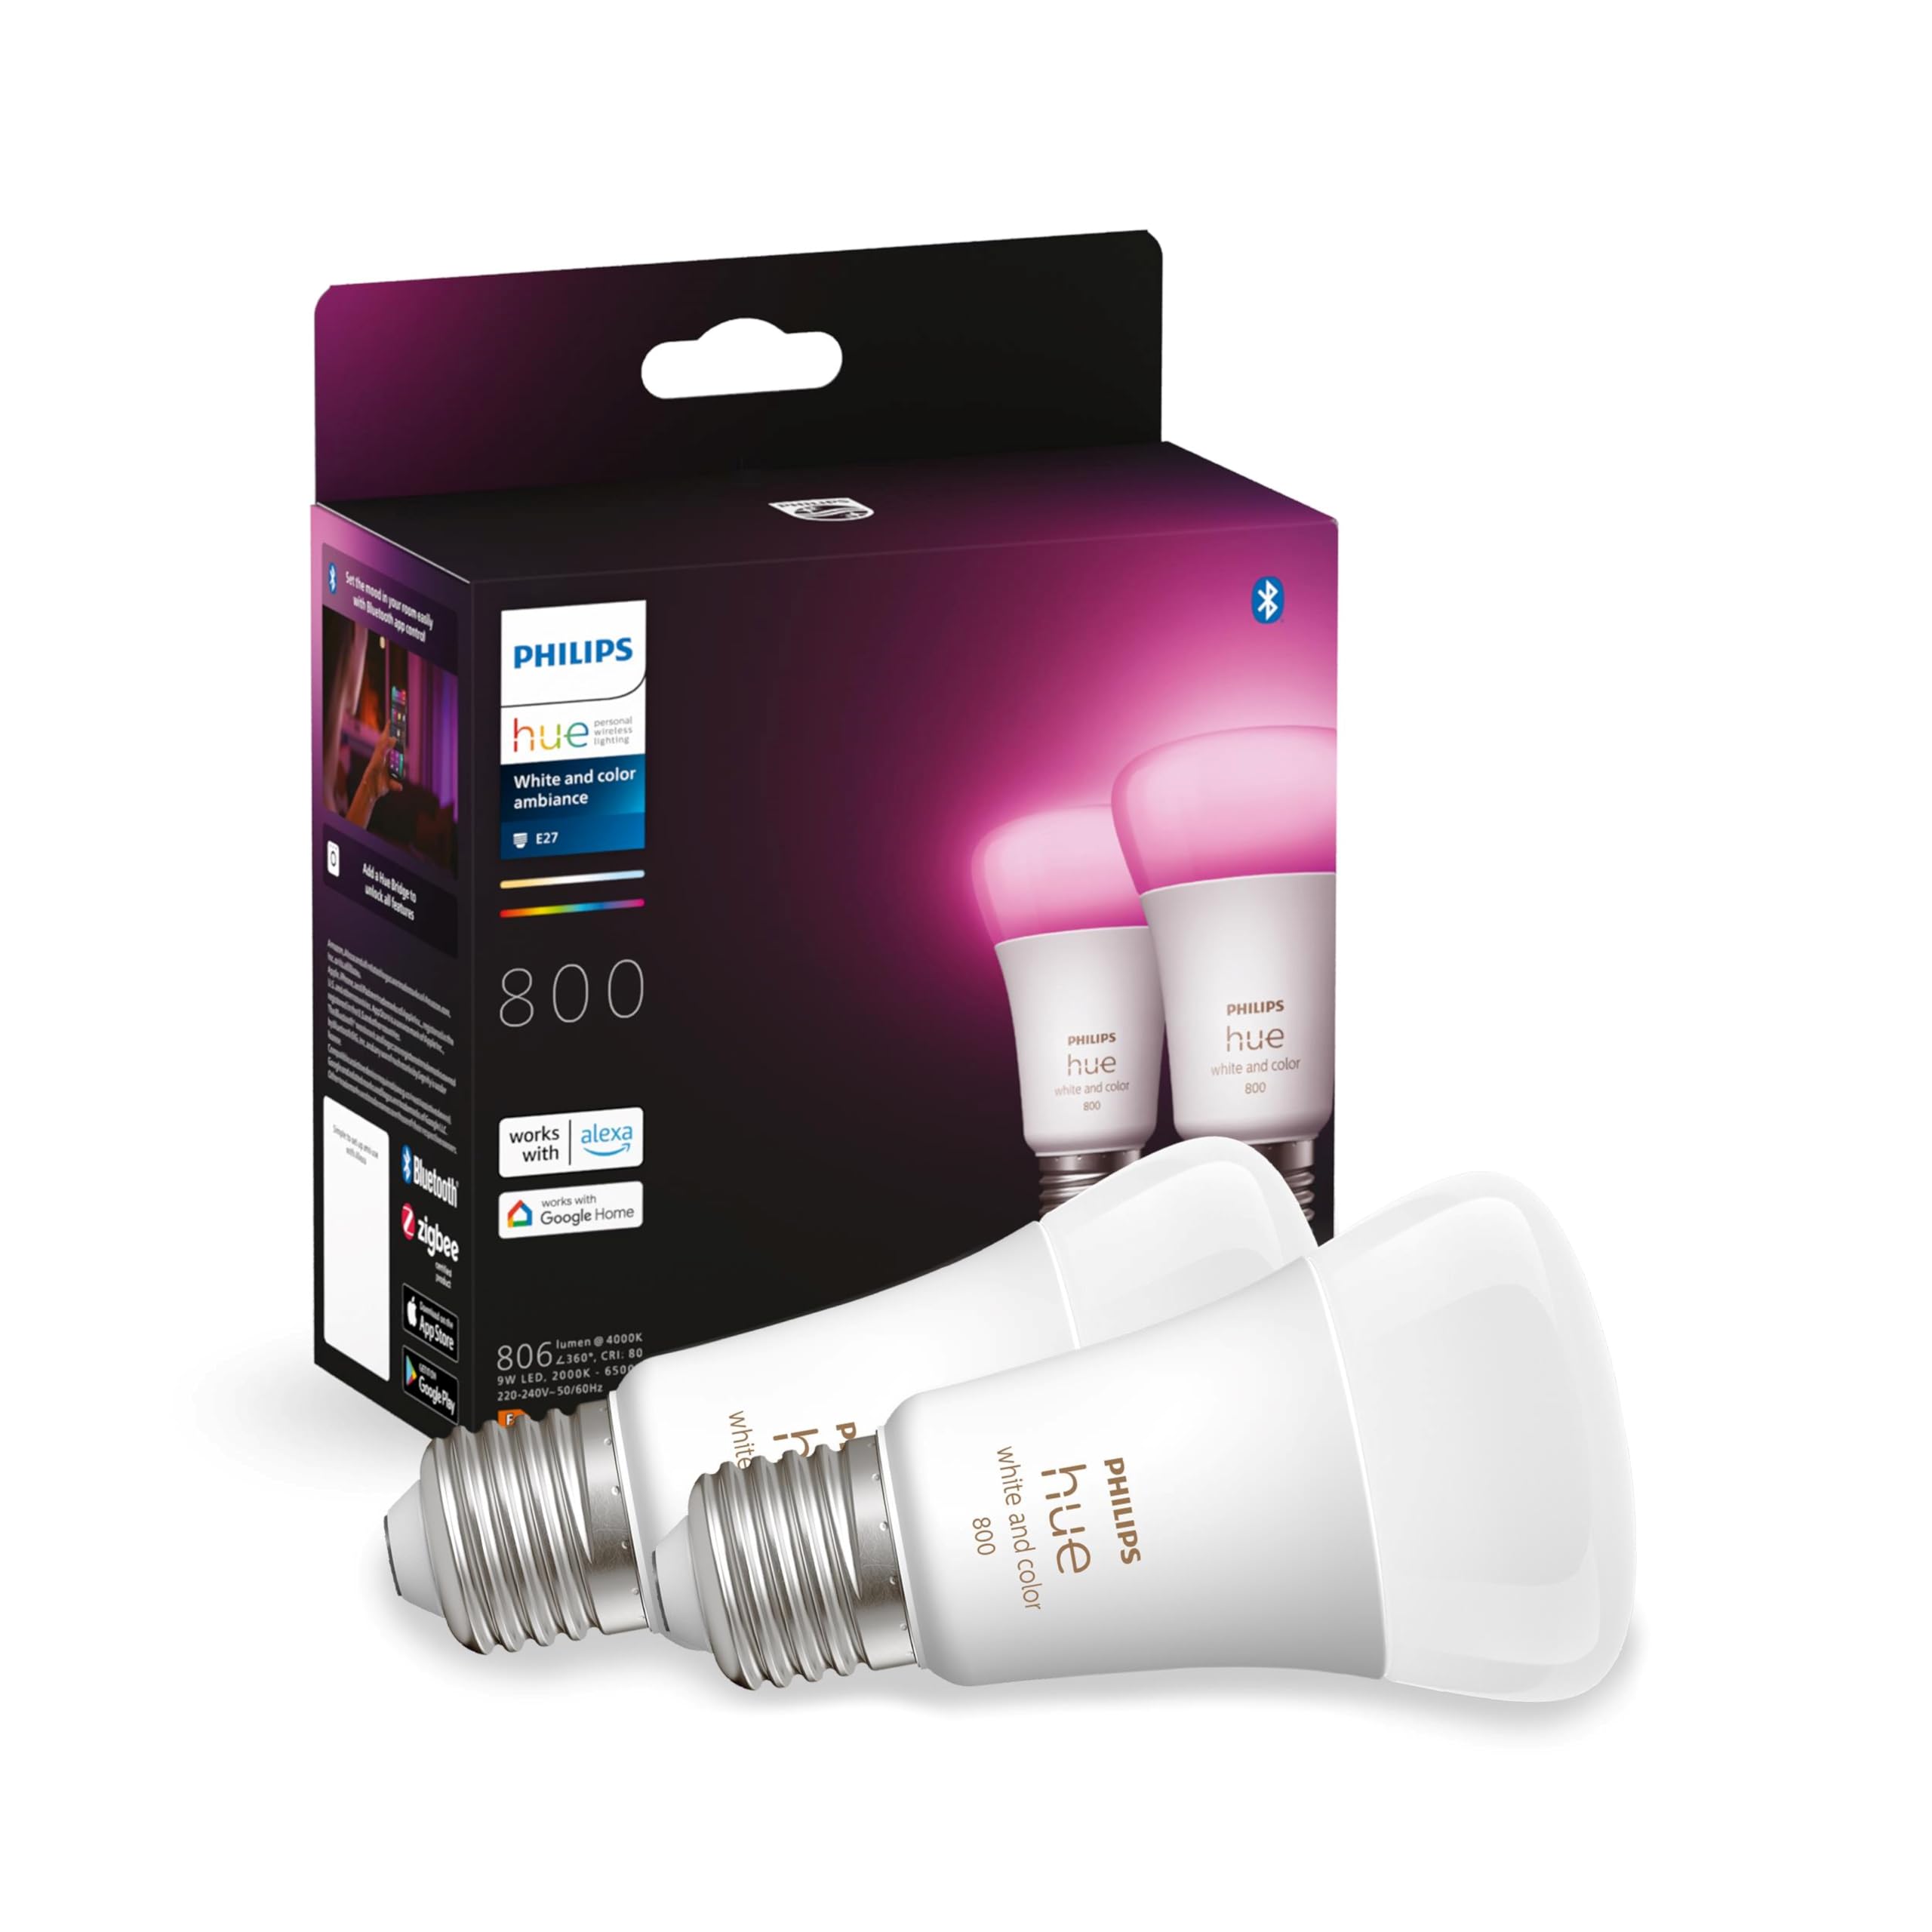 Philips Hue White & Color Ambiance E27 LED Lampen 2-er Pack (806 lm), dimmbare LED Leuchtmittel für das Hue Lichtsystem mit 16 Mio. Farben, smarte Lichtsteuerung über Sprache und App